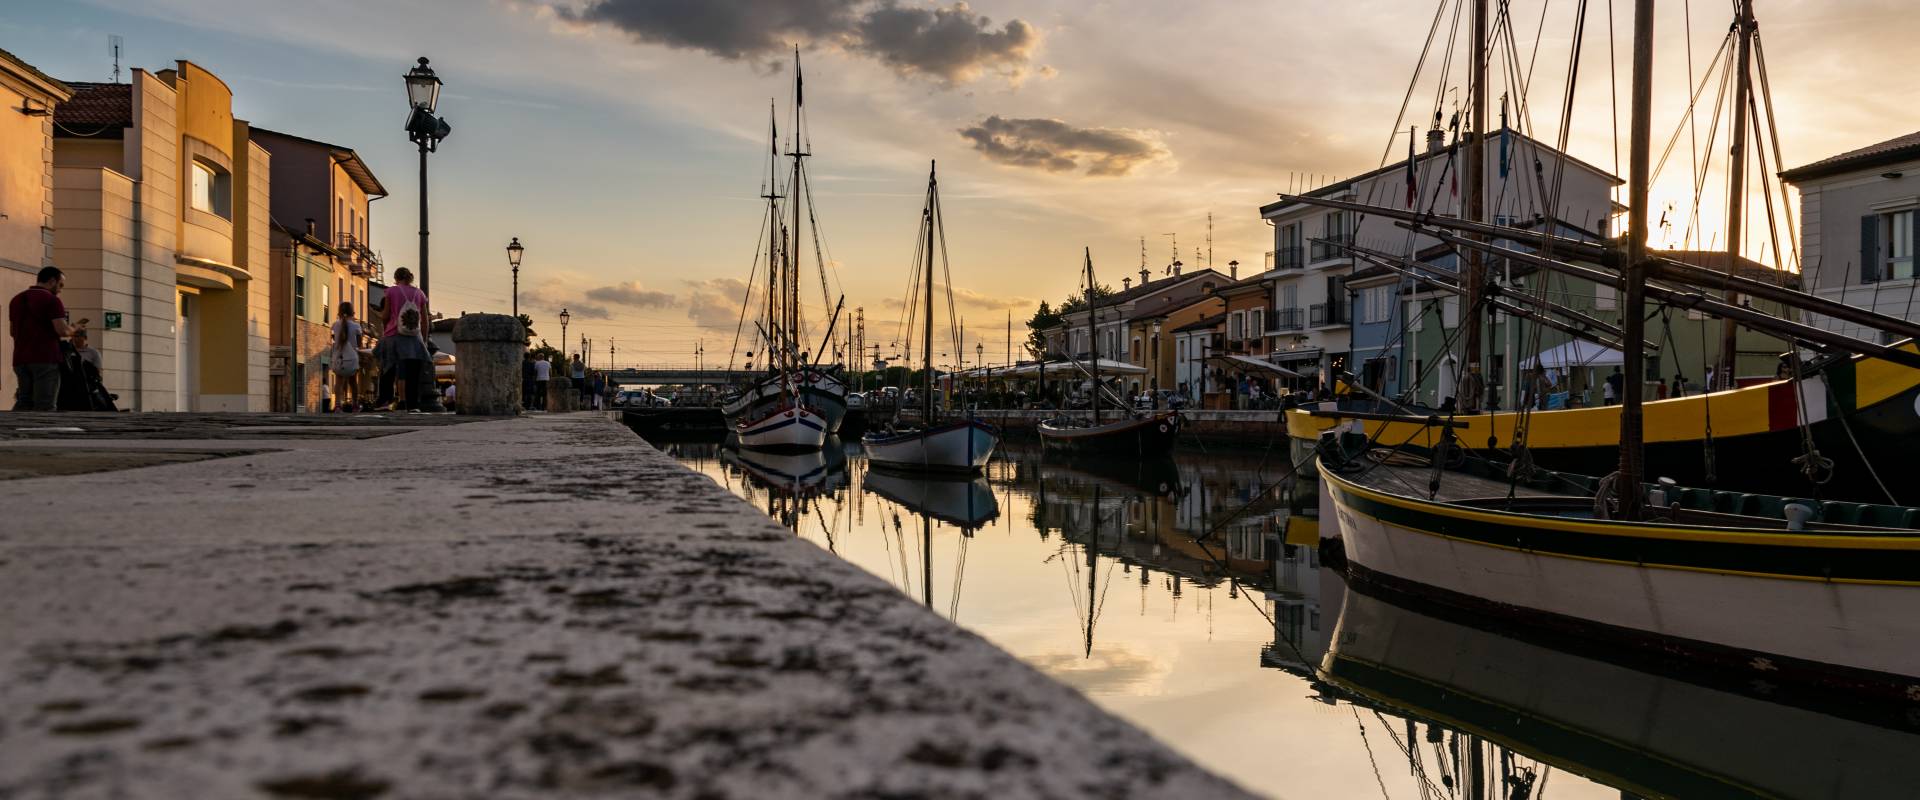 Tramonto sul Porto Canale Leonardesco a Cesenatico foto di Matteo Panzavolta